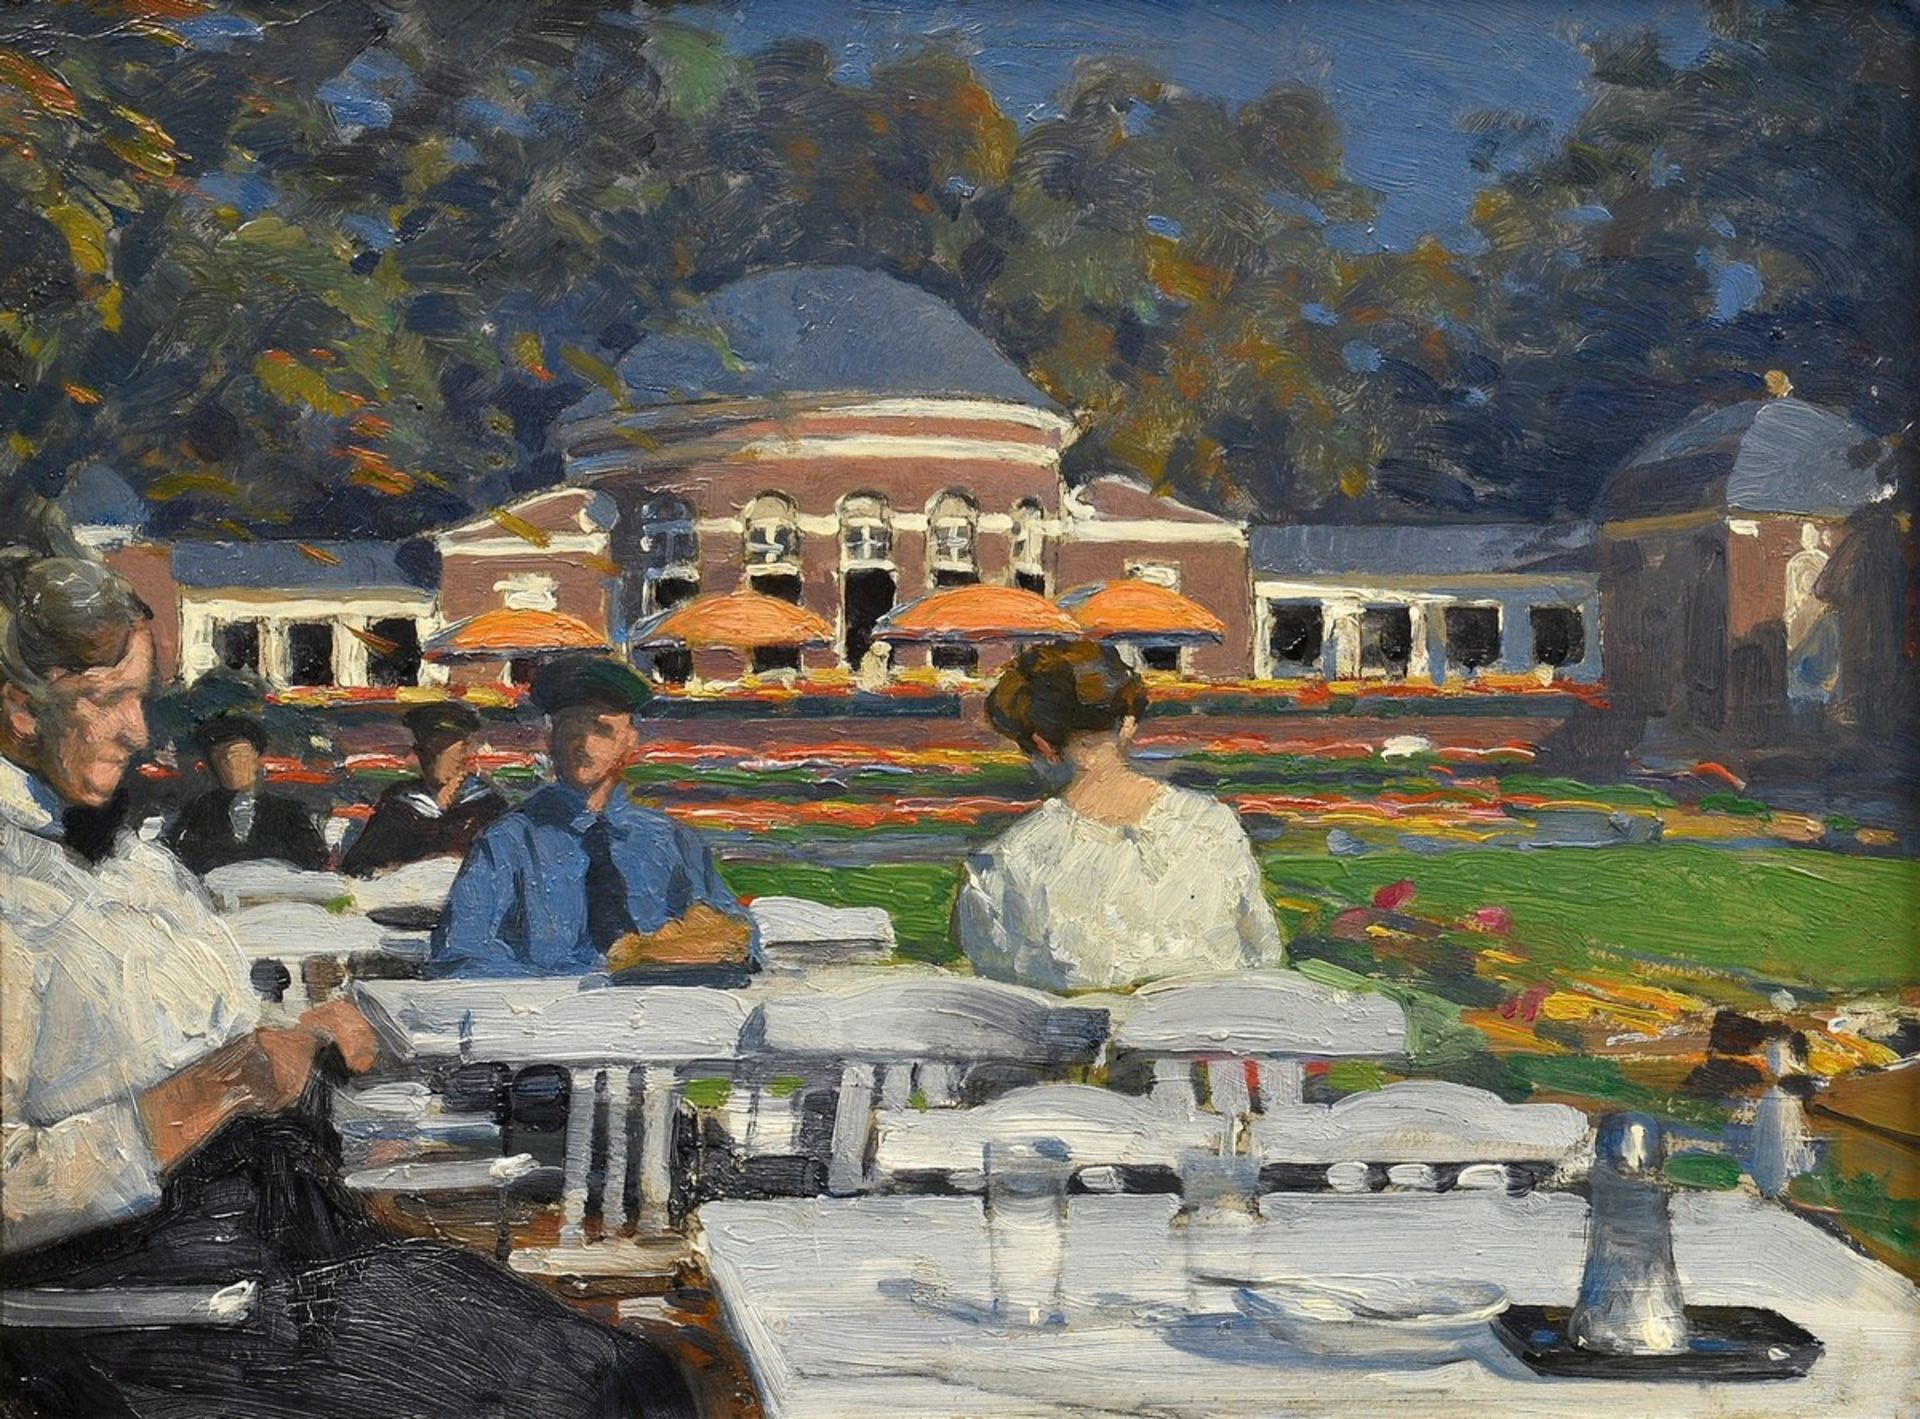 Unbekannter Künstler des frühen 20.Jh. "Café Orangerie", Öl/Malpappe, 25,5x33,7cm (m.R. 32,3x40,7cm